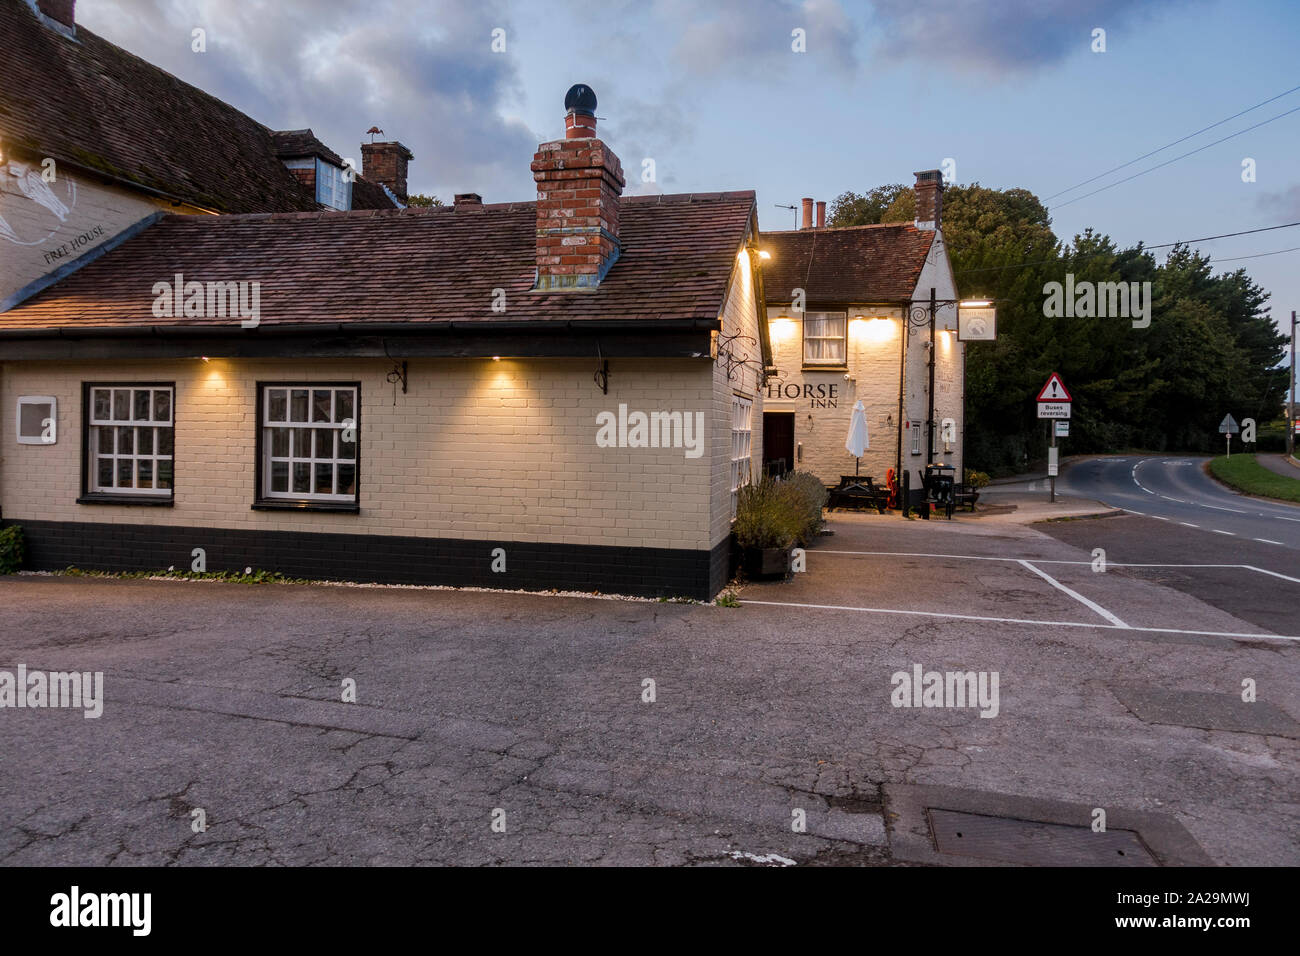 Typical English Pub, roadside restaurant at sunset, Dorset, UK. Stock Photo